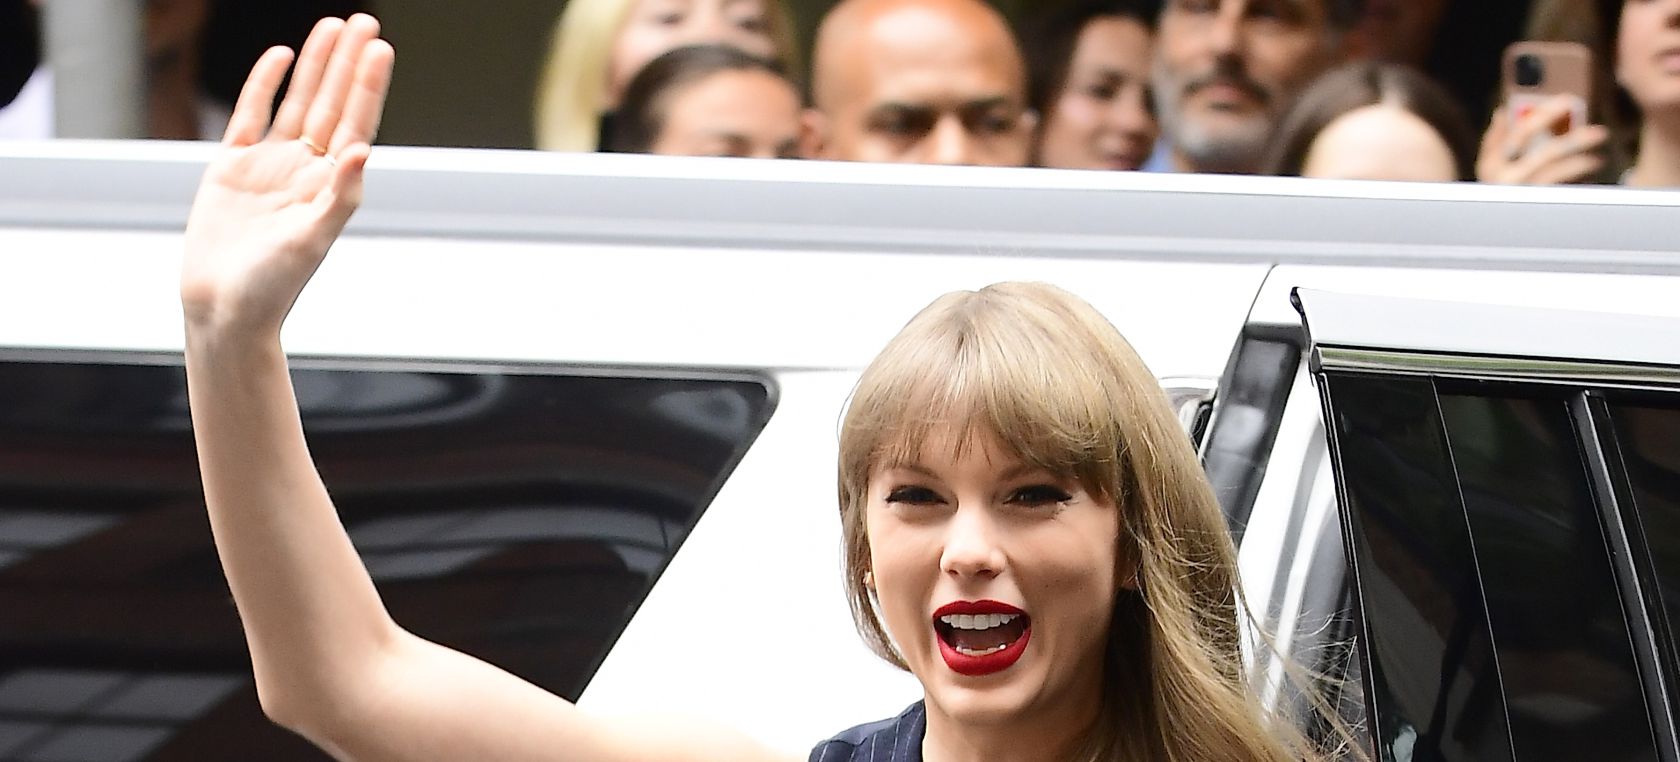 El representante de Taylor Swift responde a las críticas por contaminación de su jet privado